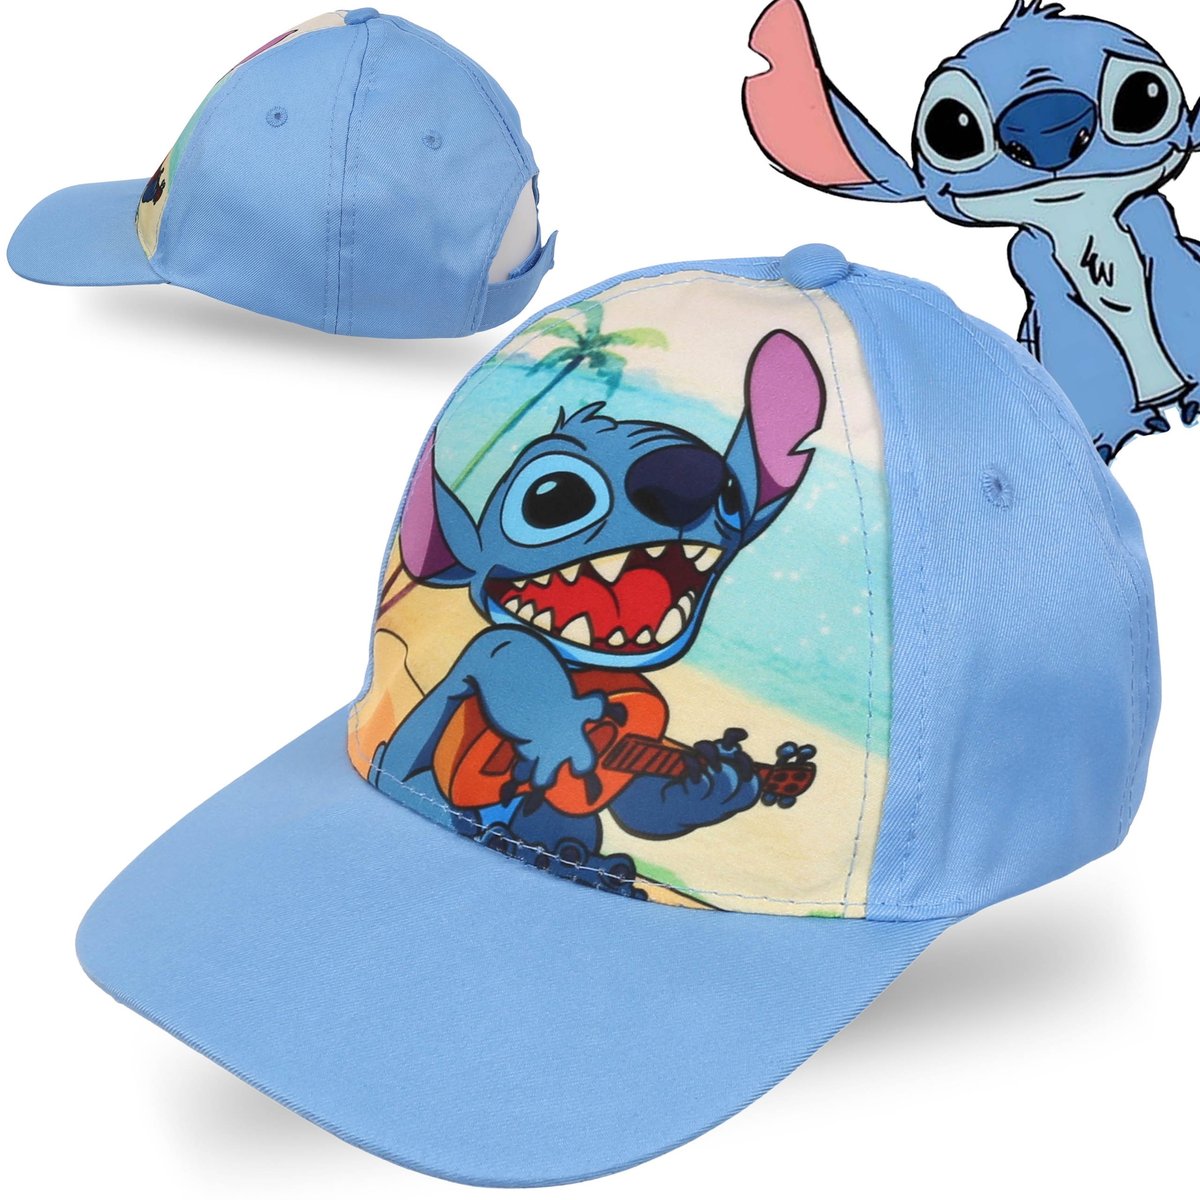 Stitch Disney Niebieska czapka z daszkiem, dziewczęca czapka 54 cm